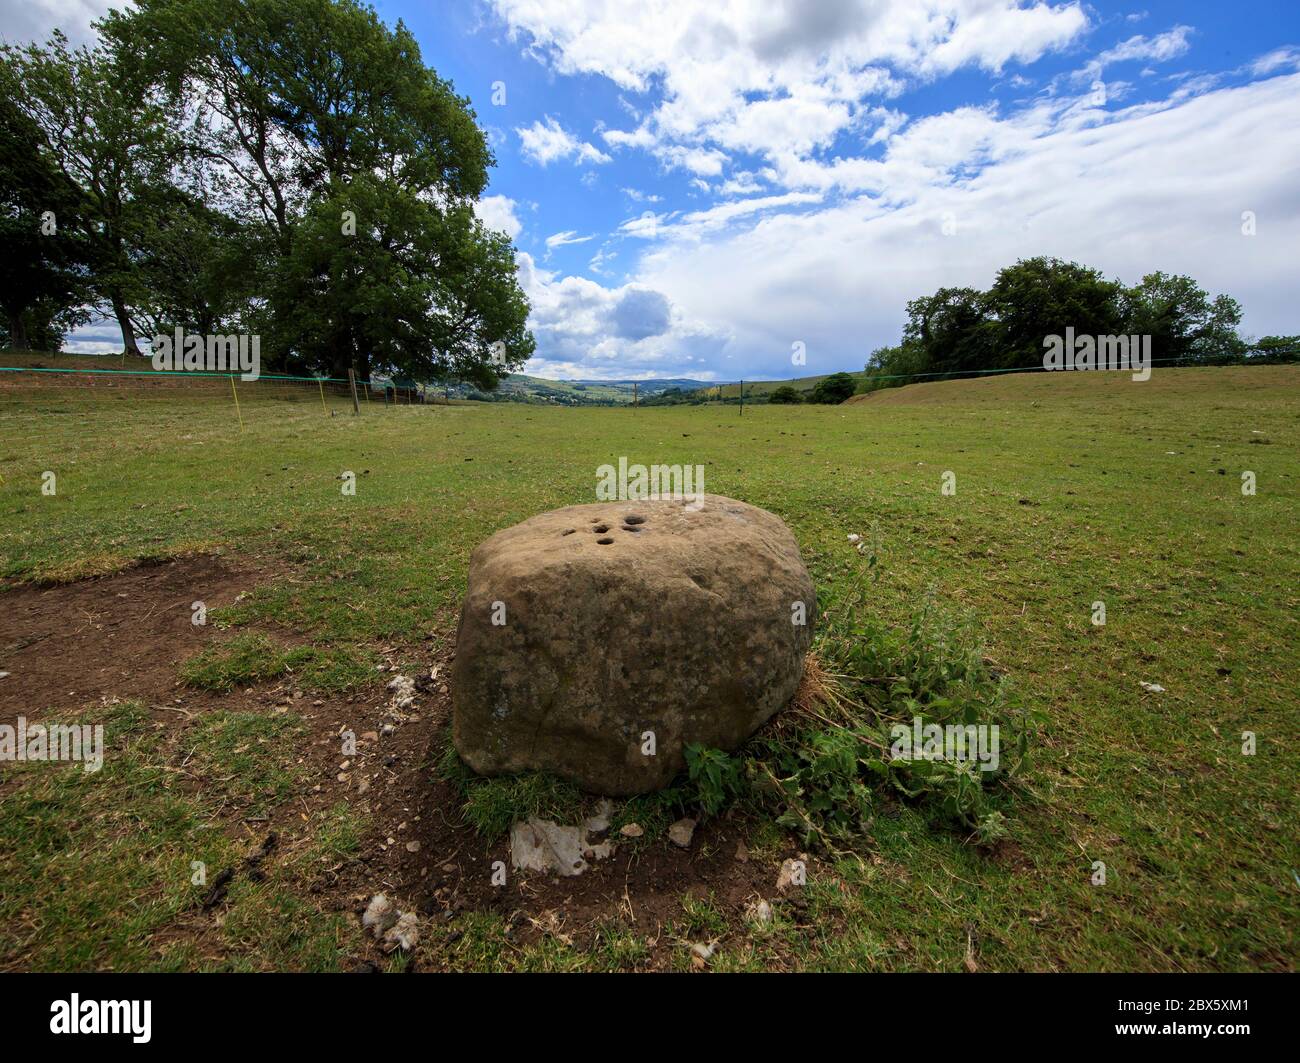 Der Boundary Stone am Rande des Dorfes Eyam in Derbyshire hinterließen die Menschen aus Eyam während der Pest Münzen in Löchern im Stein, die sie mit Essig füllten, in der Hoffnung, die Krankheit zu töten. Benachbarte Gemeindemitglieder hinterließen im Gegenzug Essen. Nachdem im Mai 1666 im Dorf Eyam der erste Fall der Beulenpest gefunden wurde, gingen die Dorfbewohner in eine selbstauferlegte Isolation, um zu verhindern, dass sich die Infektion auf die Nachbargemeinden ausbreitet. Ein Umfang von Steinen umgab das Dorf mit niemand erlaubt, die Grenze in beiden Richtungen bis November 1667 zu überqueren. Stockfoto